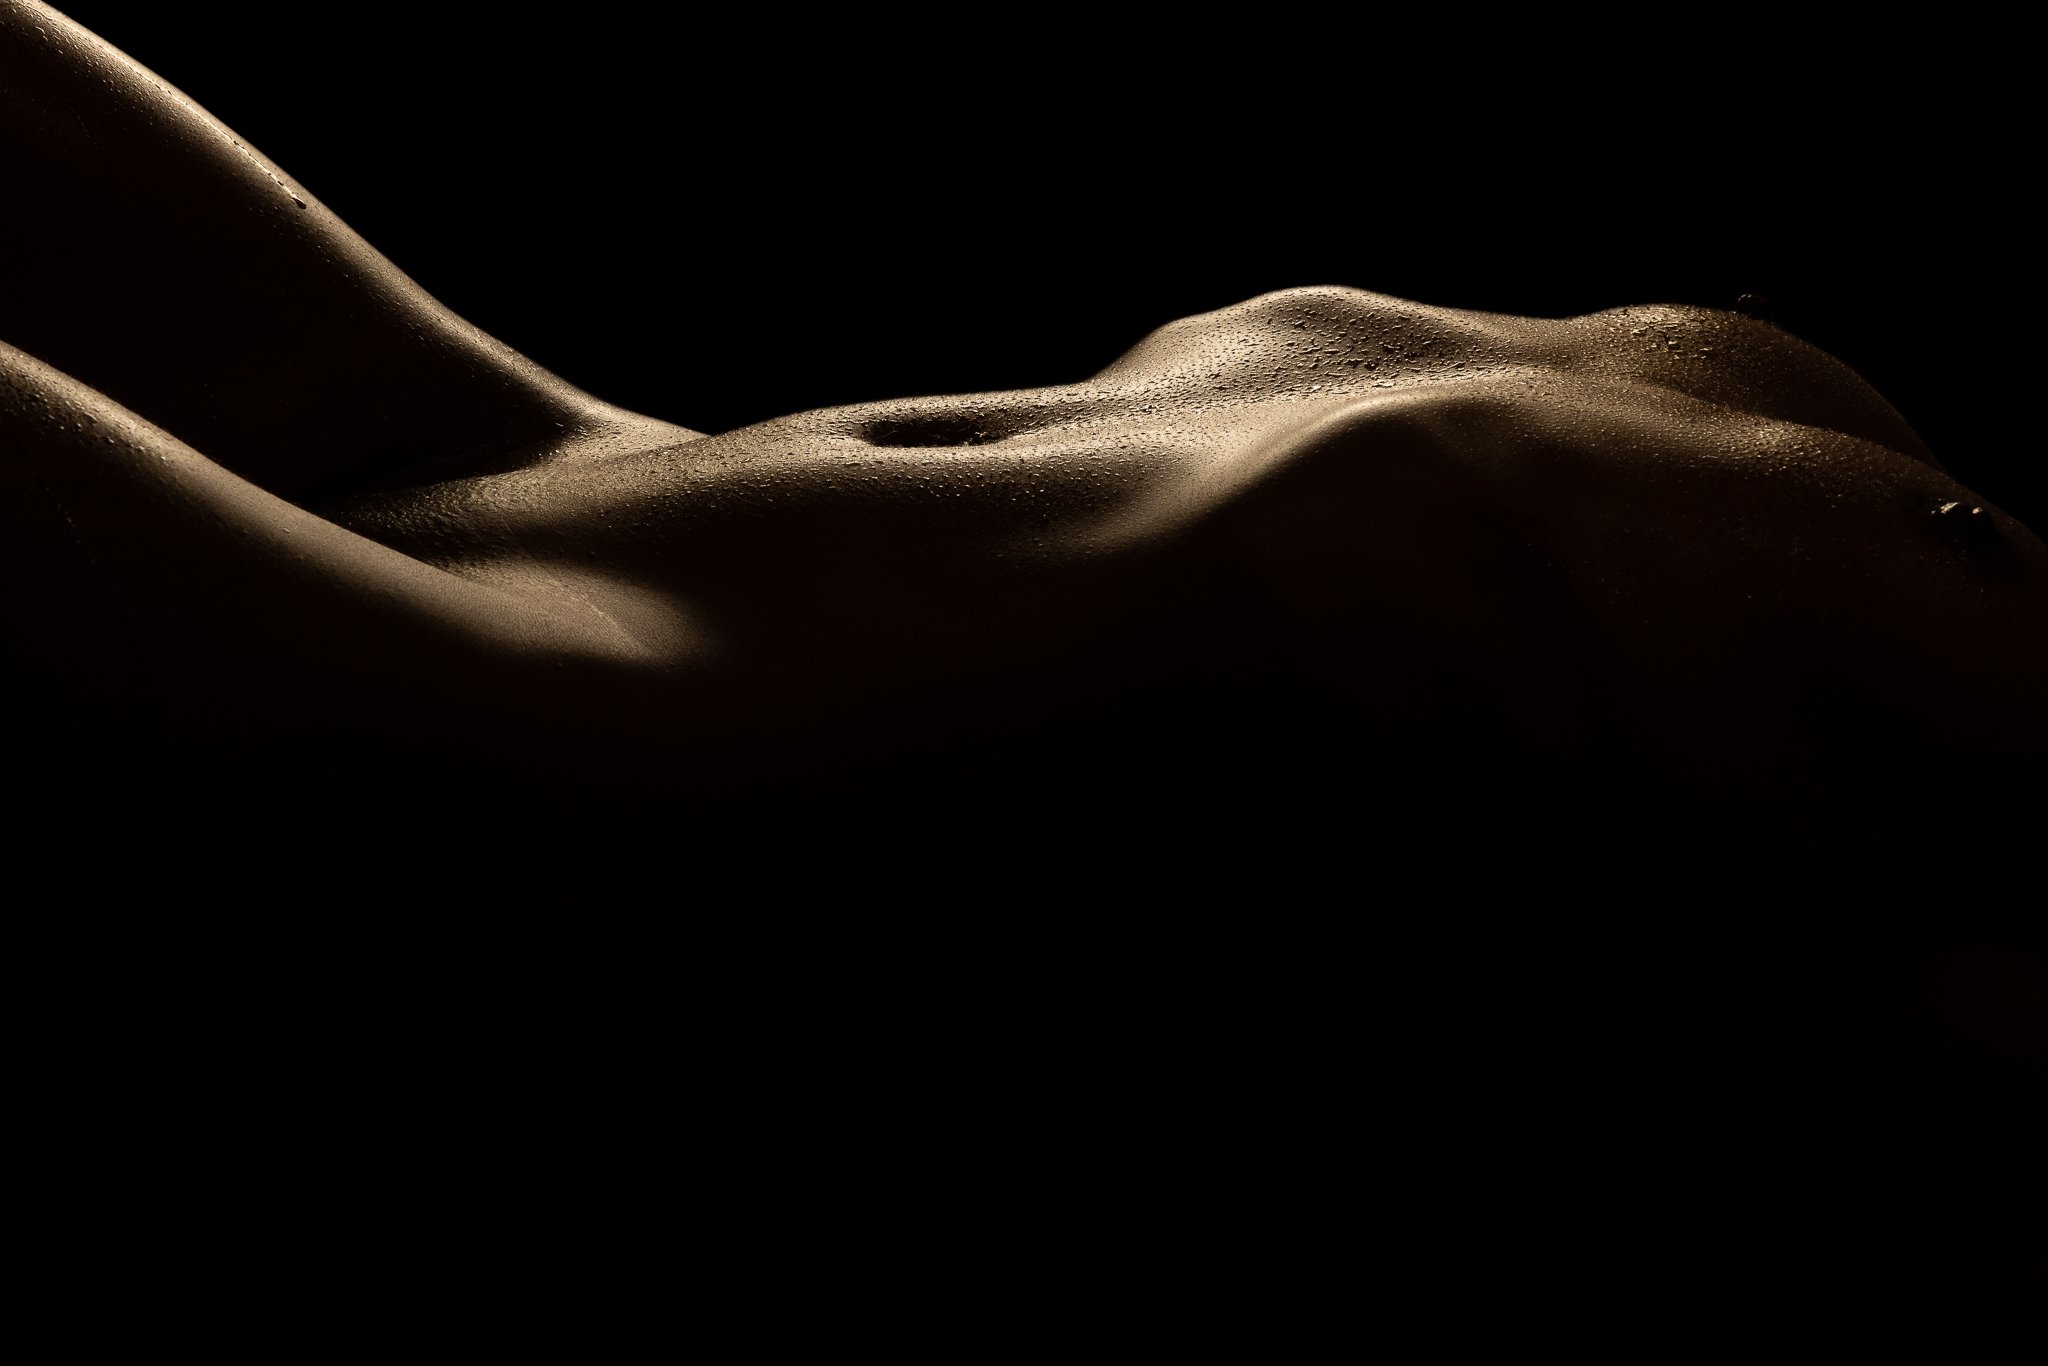 Nude silhouette boudoir photo